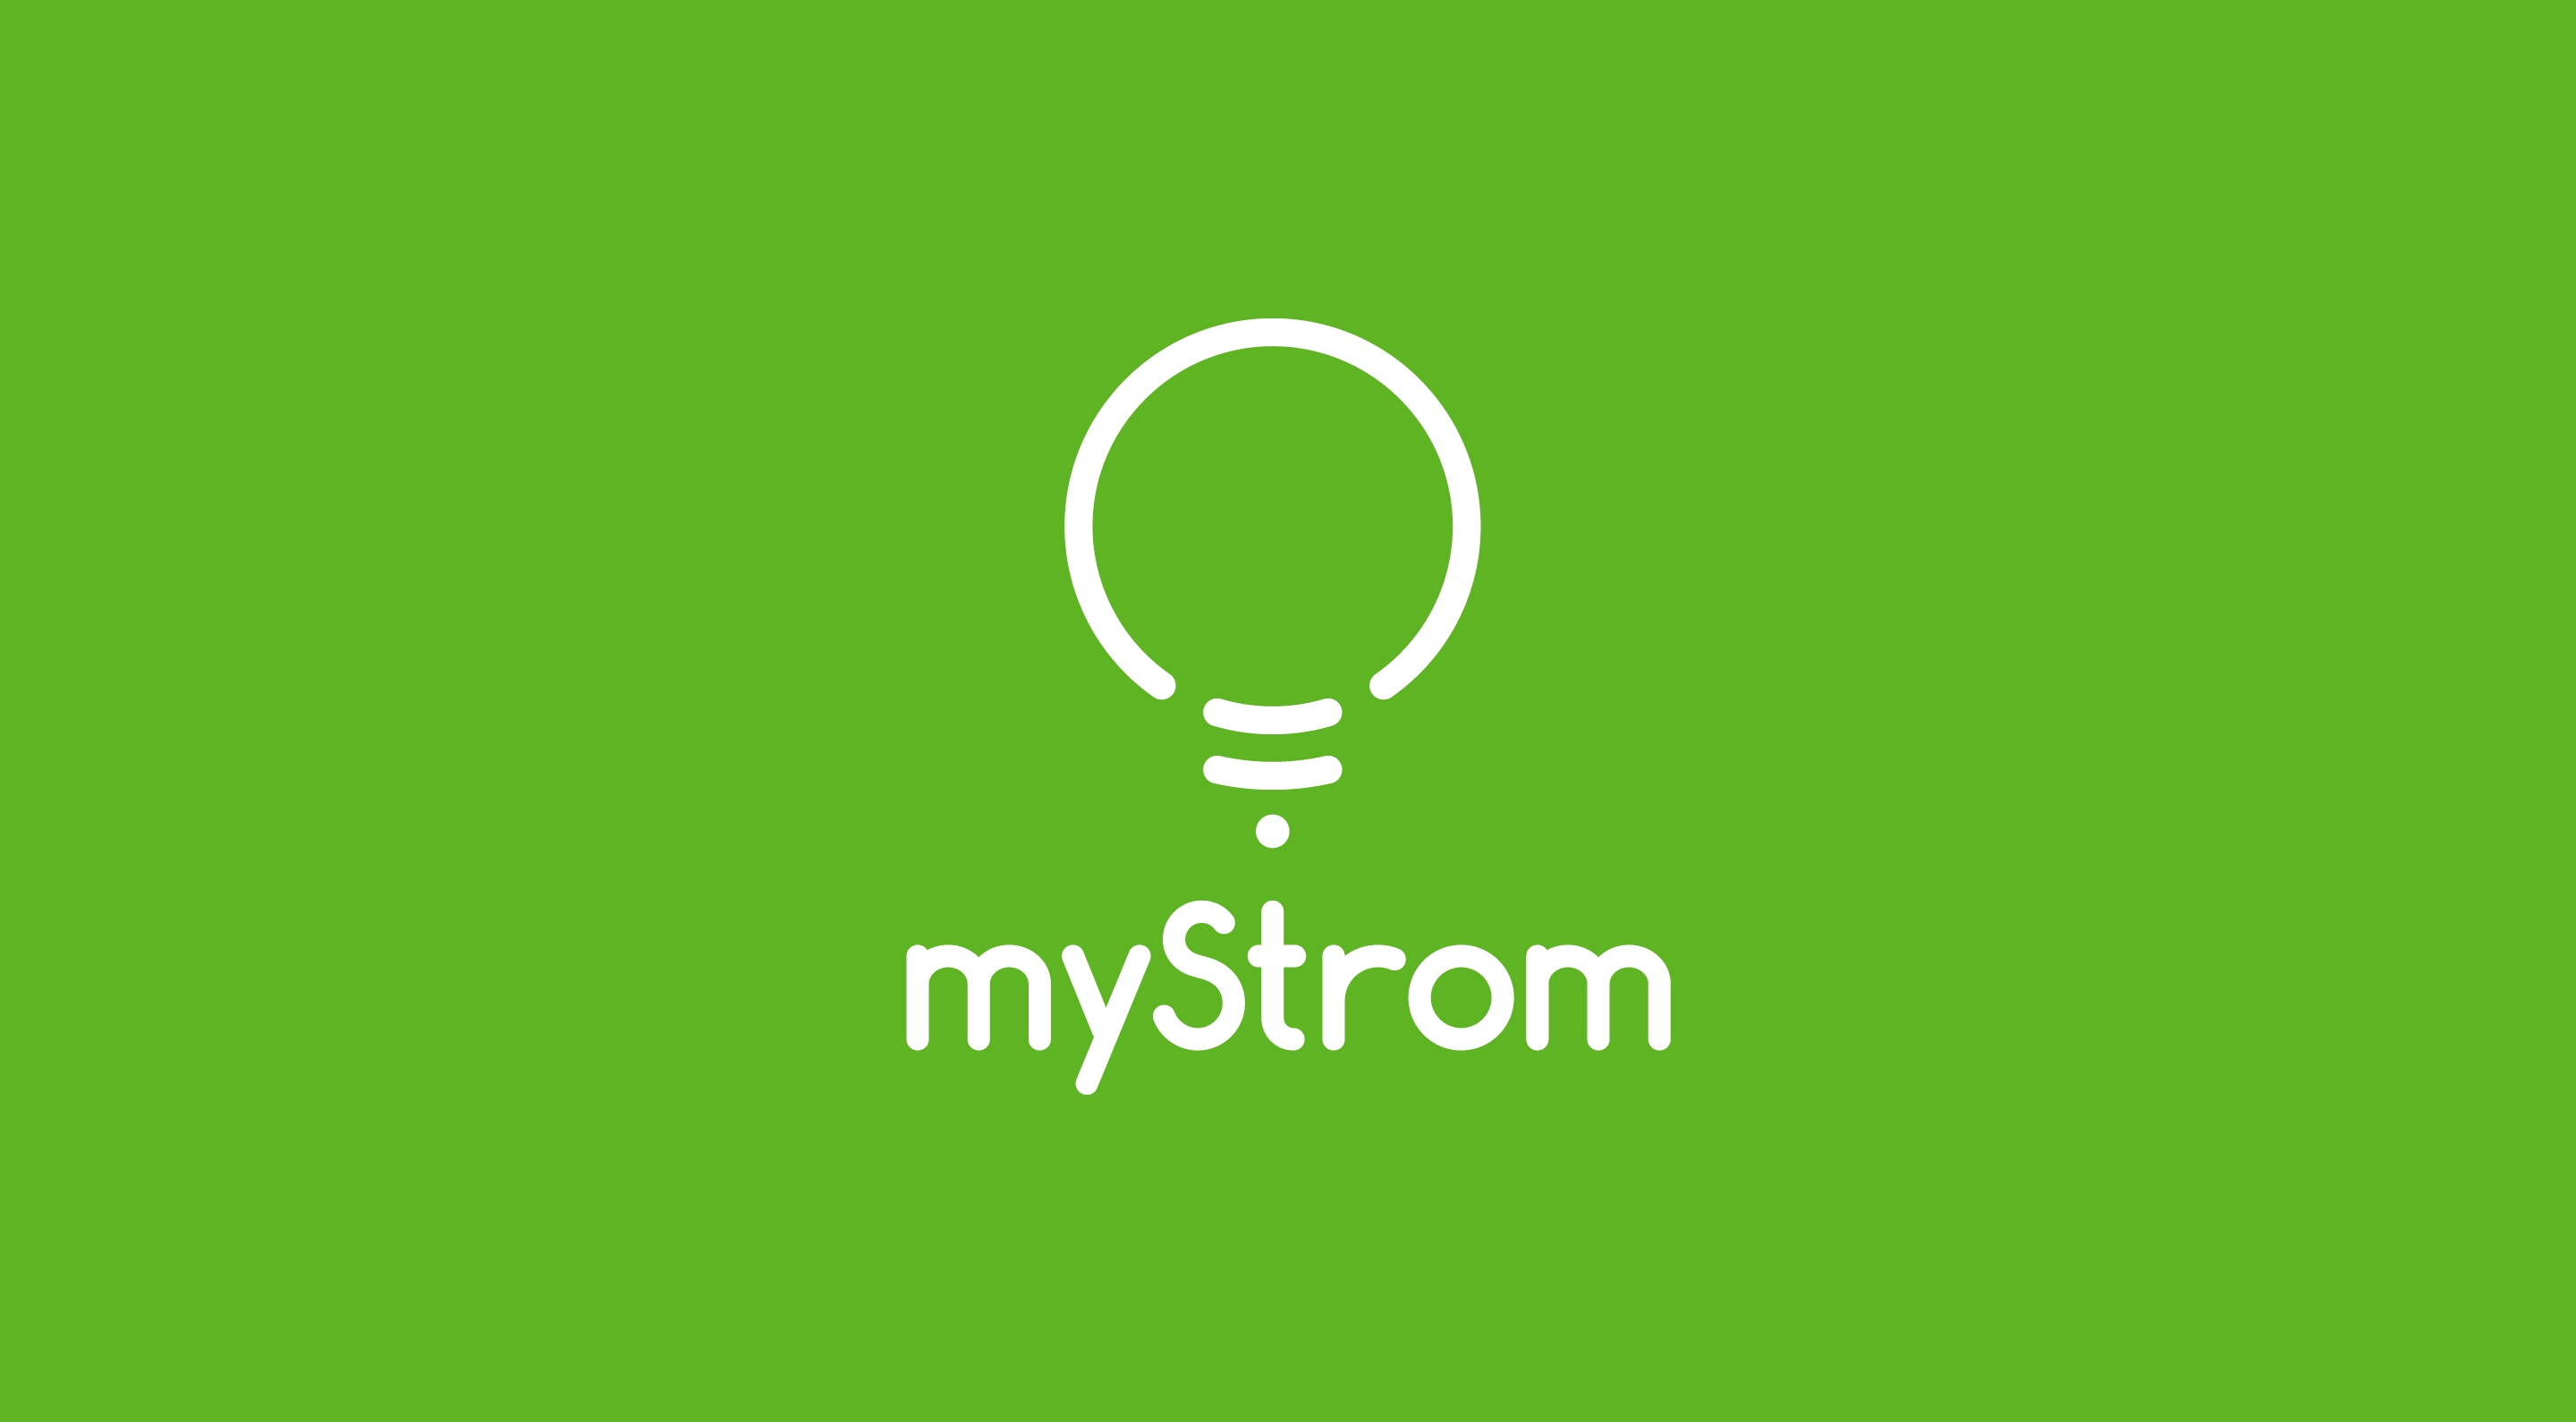 MyStrom